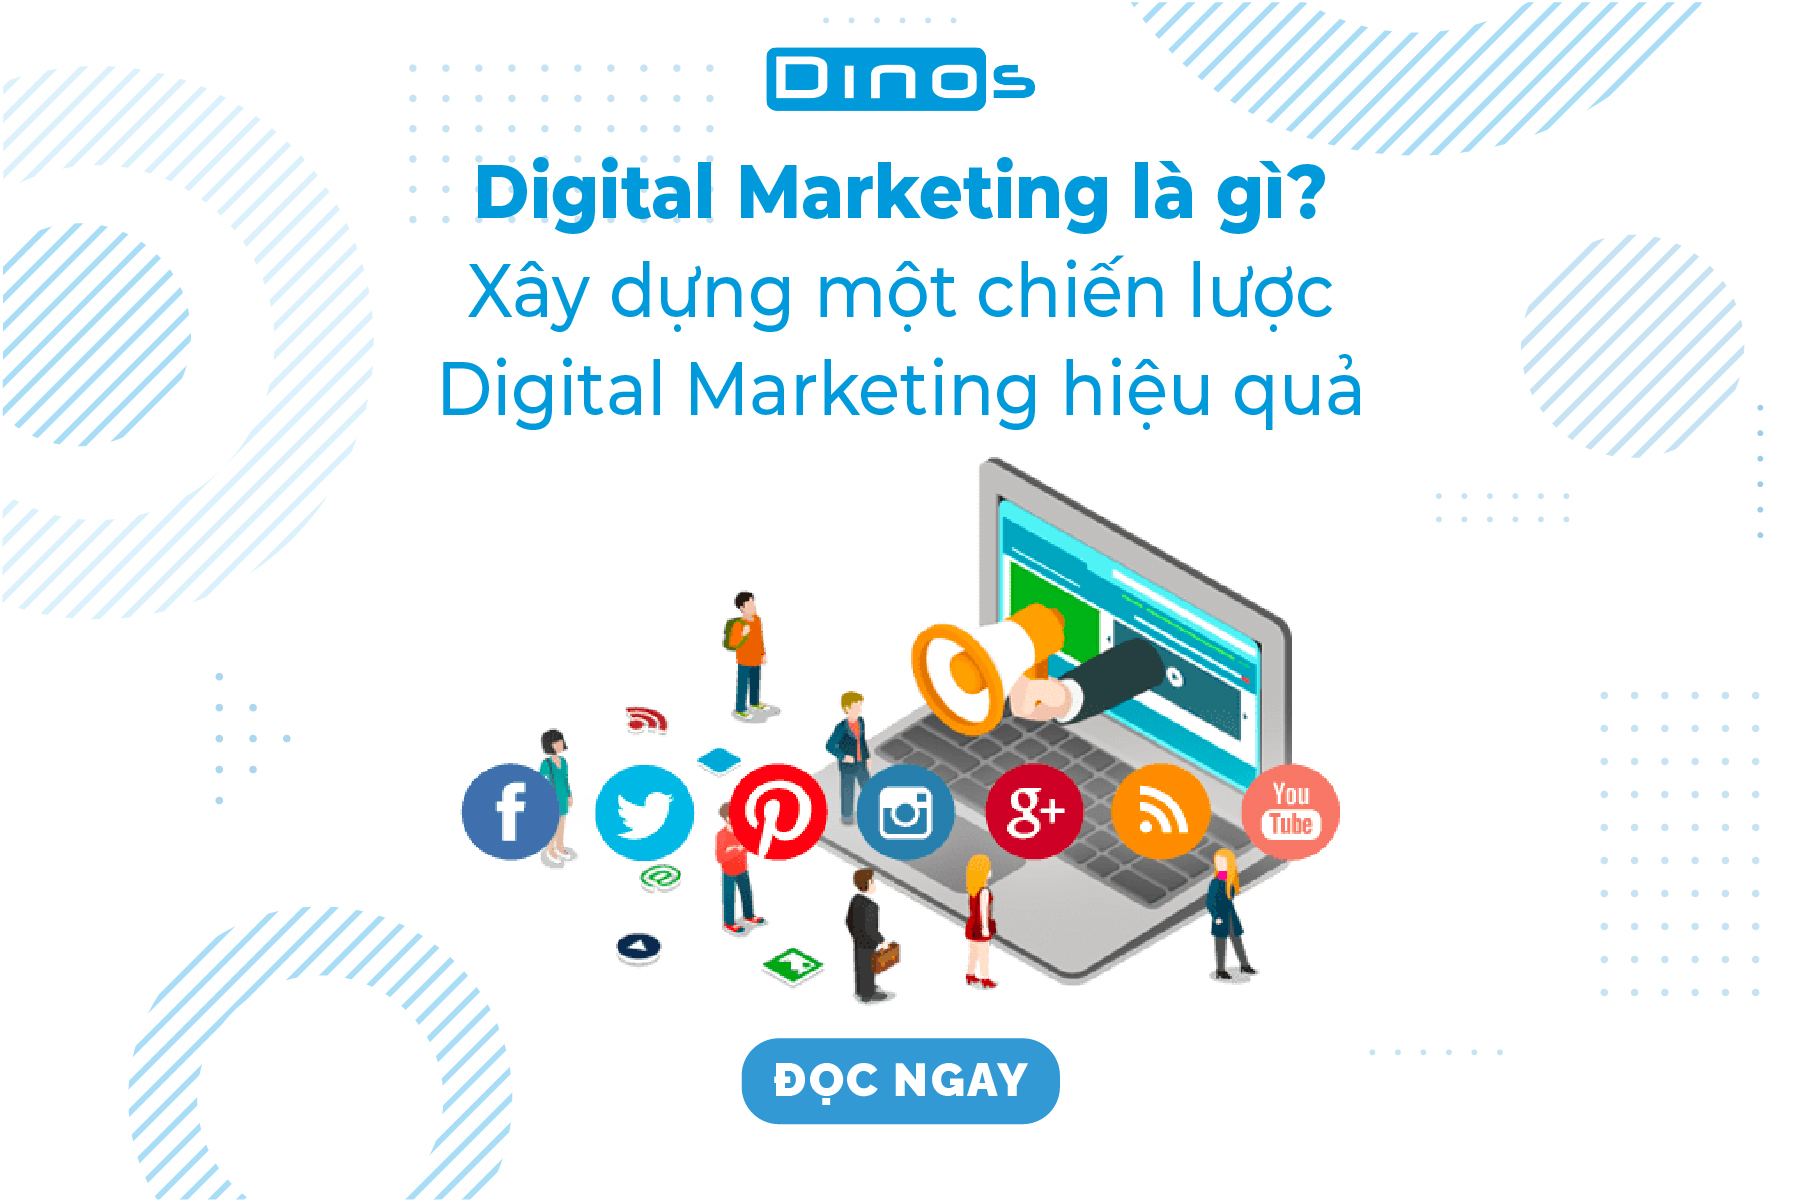 Digital Marketing là gì?